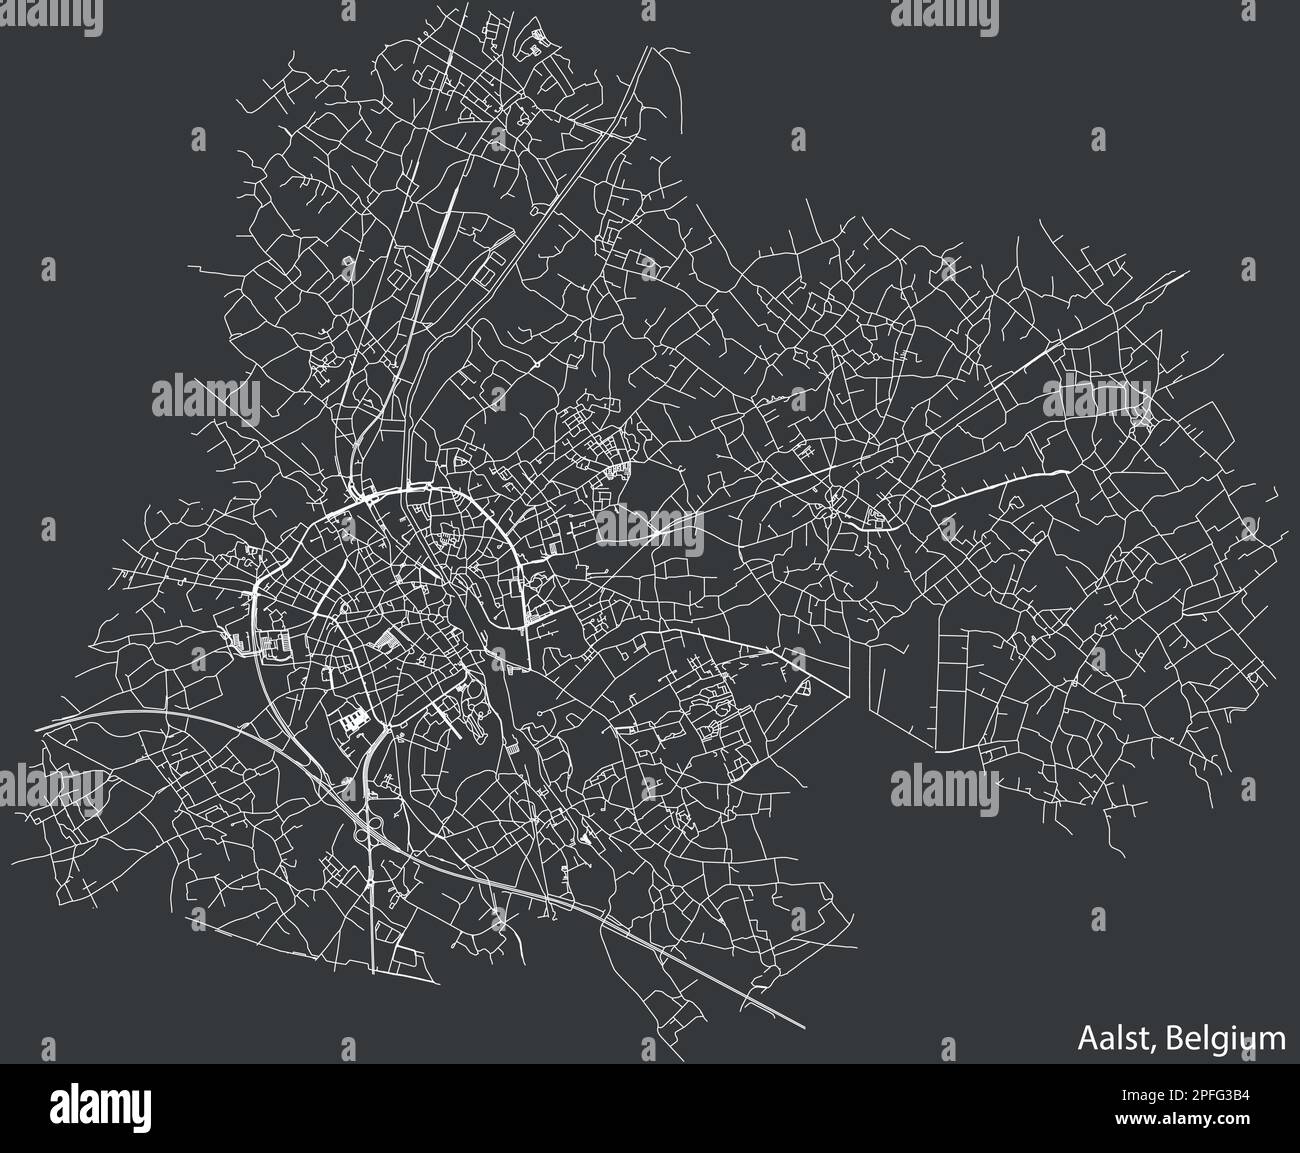 Street roads map of AALST, BELGIUM Stock Vector